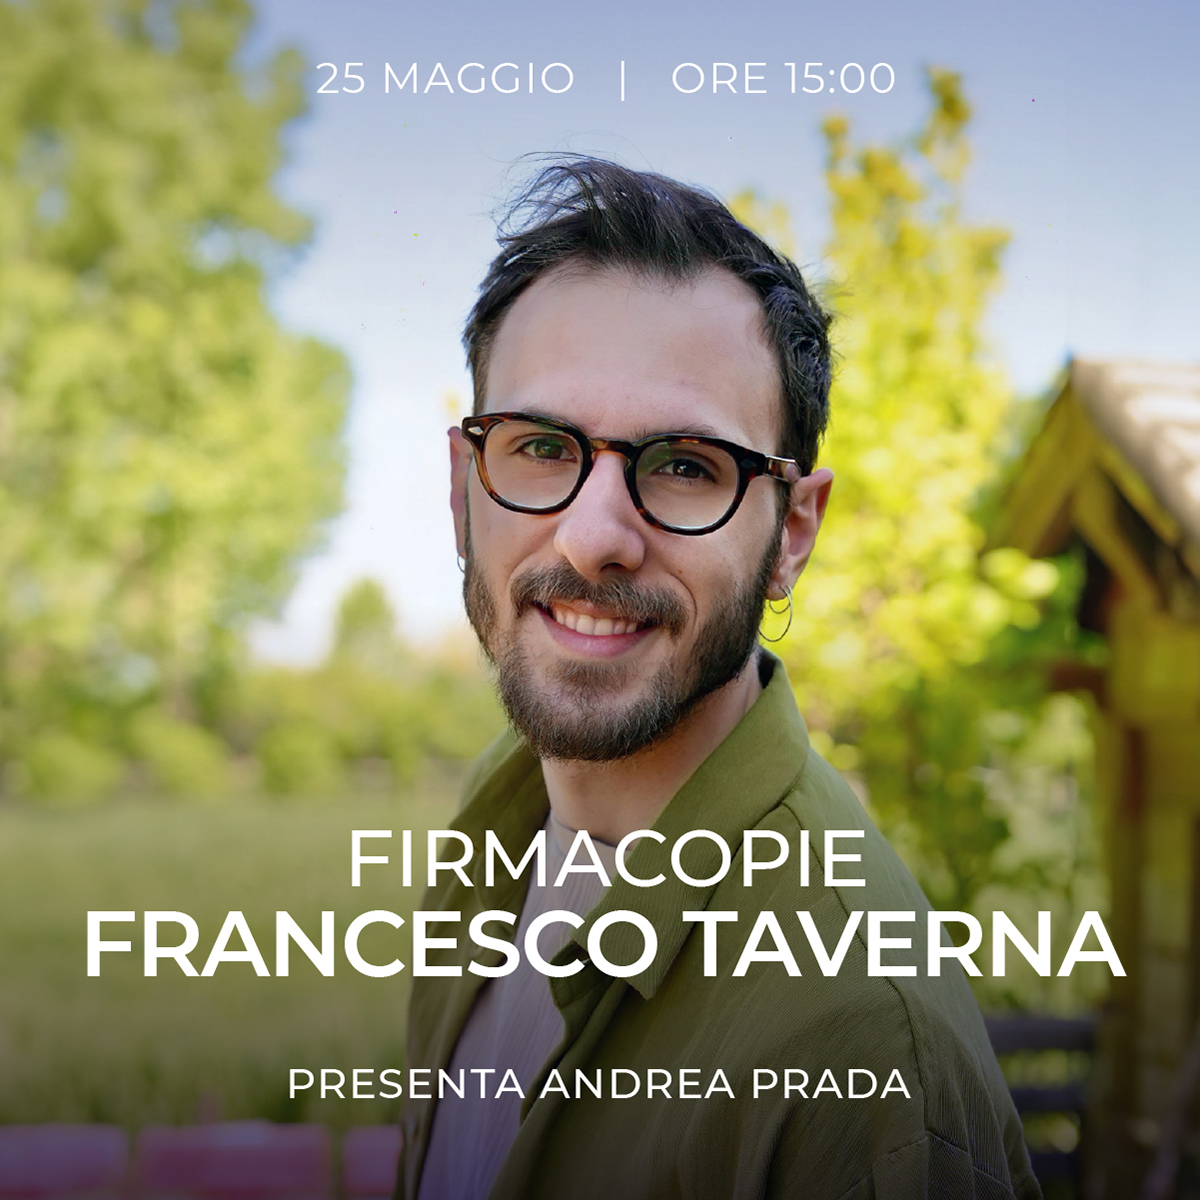 FRANCESCO TAVERNA – Firmacopie